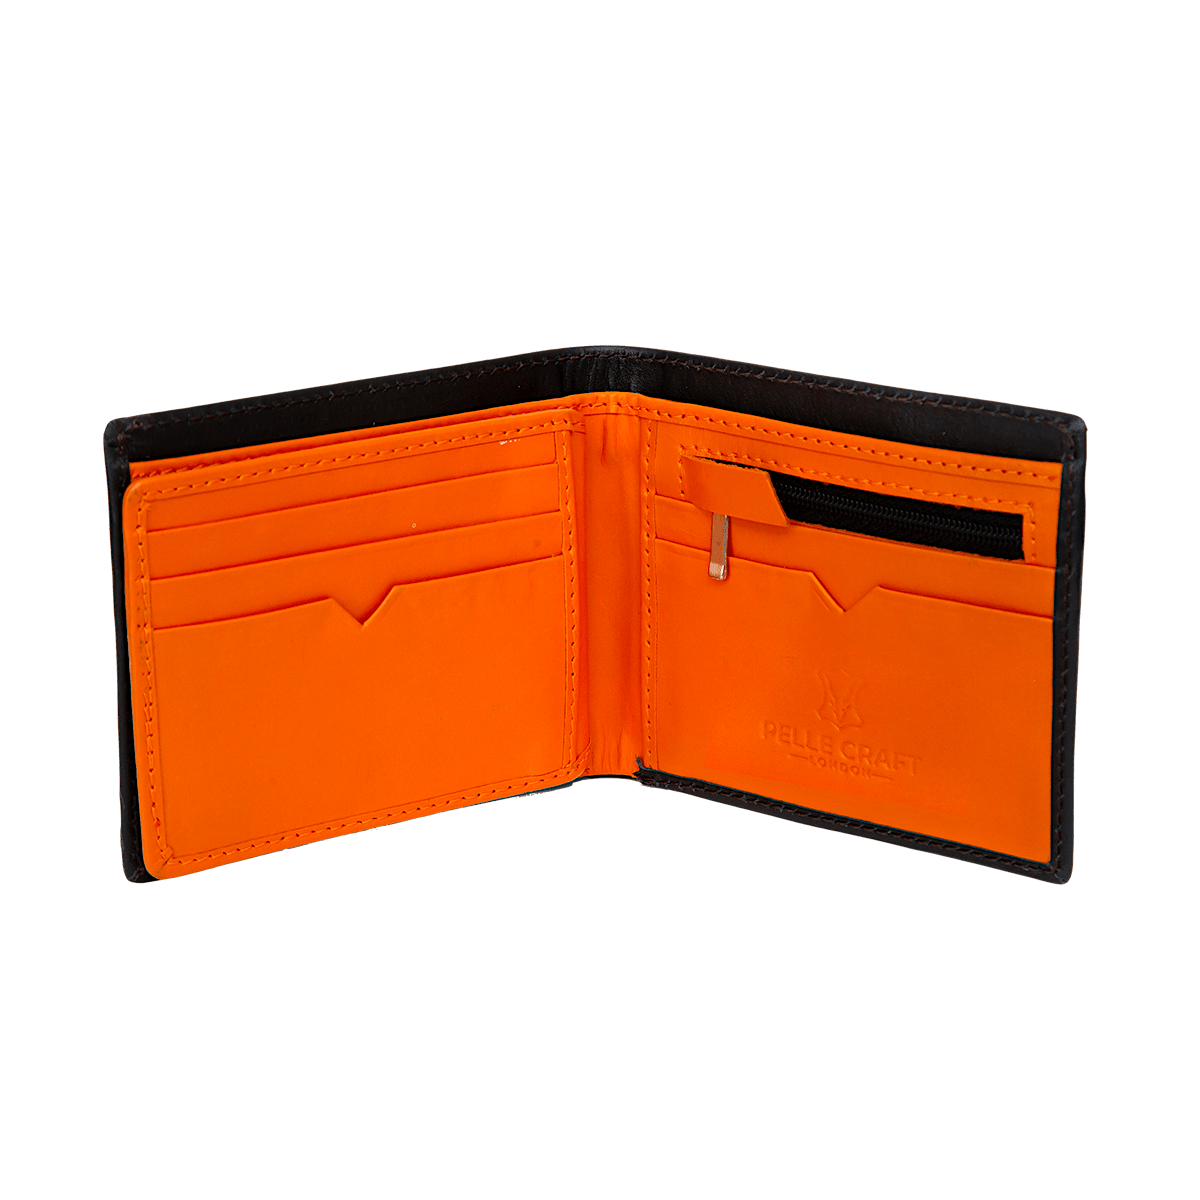 Bi Fold Zip wallet with 11 c/c & window